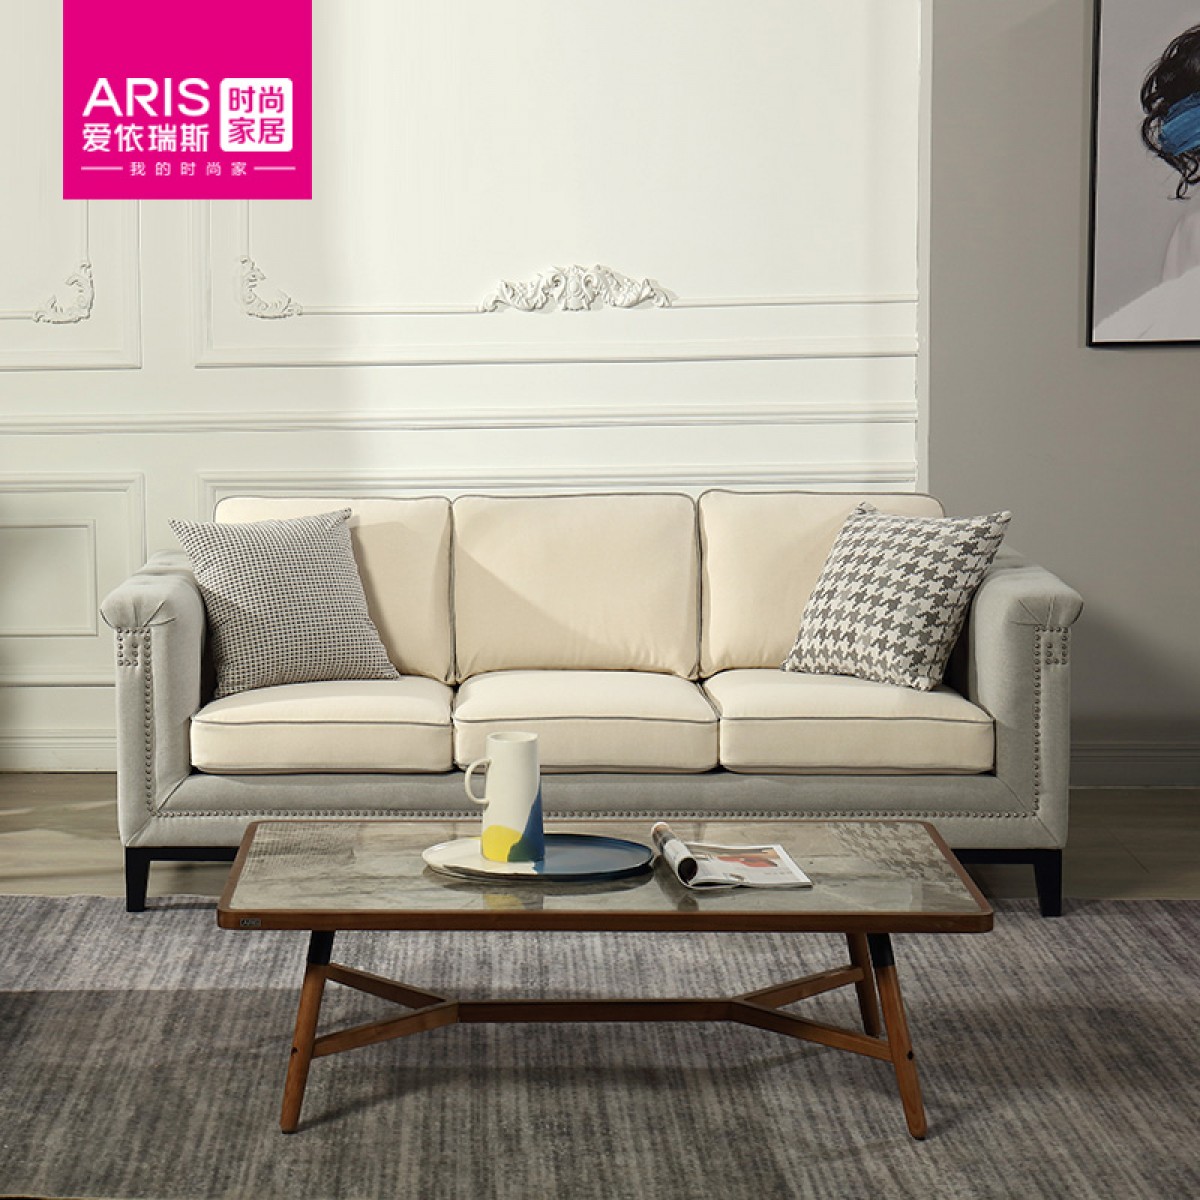 ARIS爱依瑞斯布艺沙发美式沙发复古舒适小美客厅沙发WFS-62碧安卡